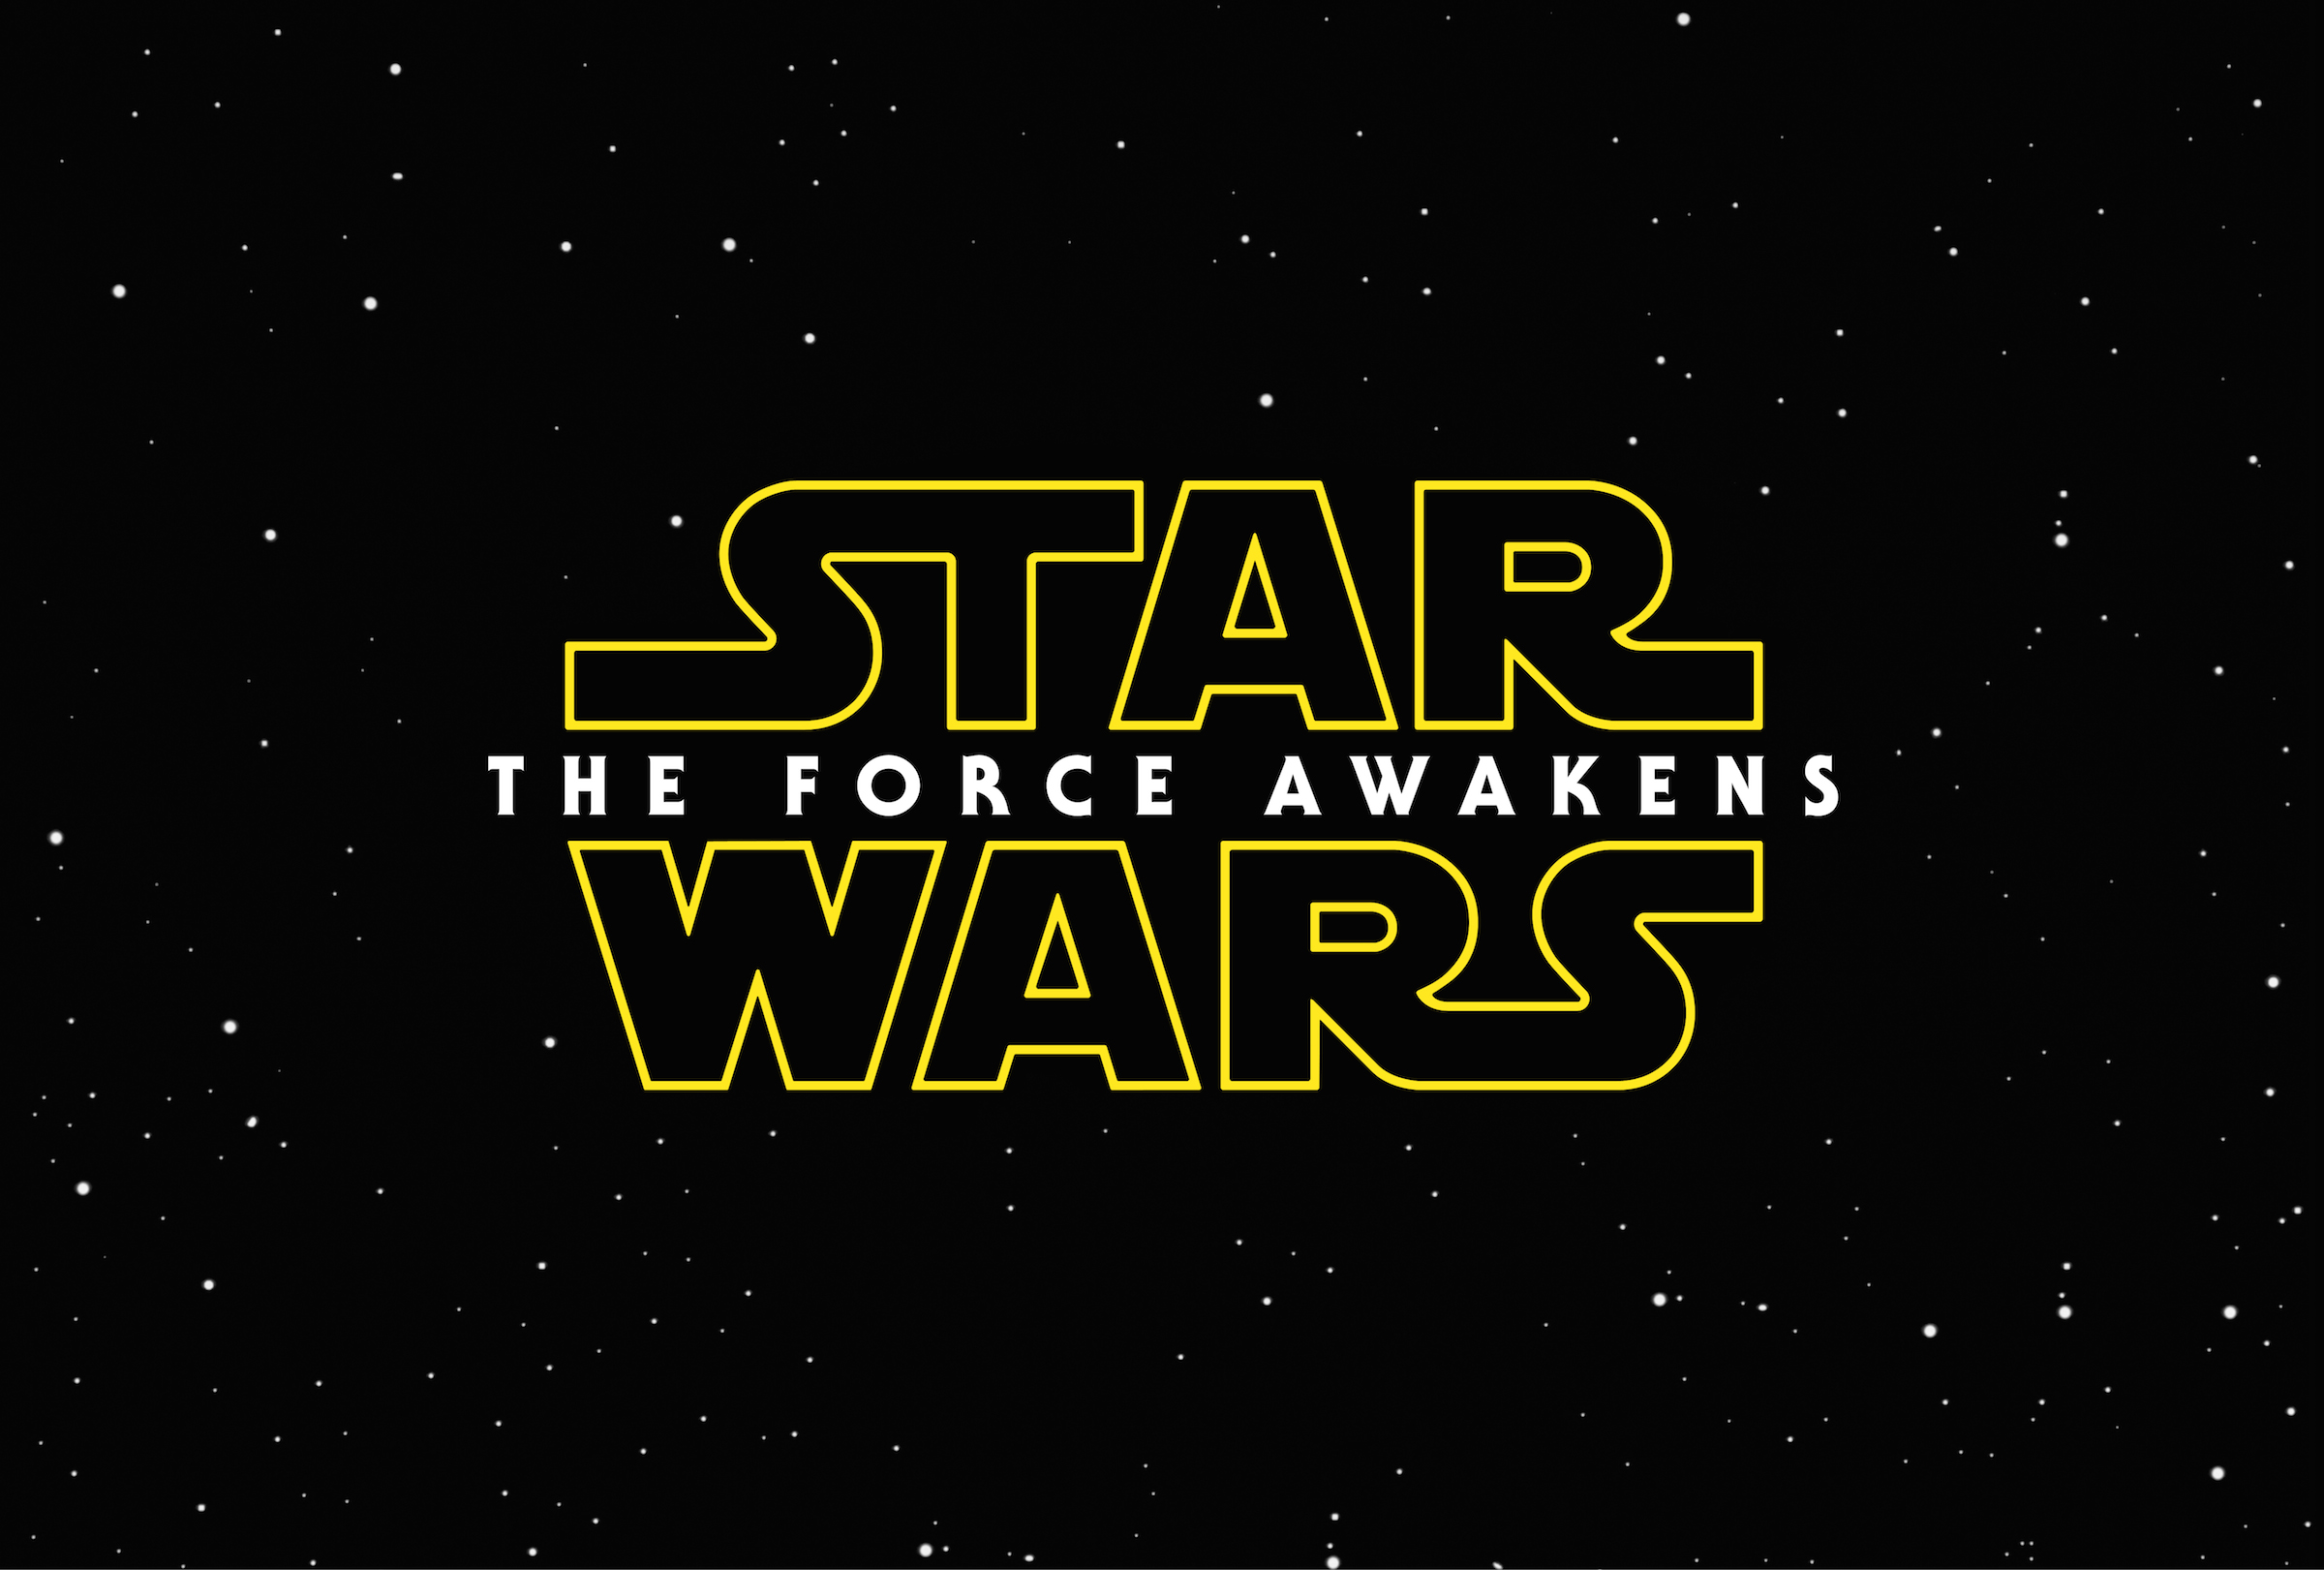 Το πρώτο teaser για το νέο Star Wars είναι εδώ!  